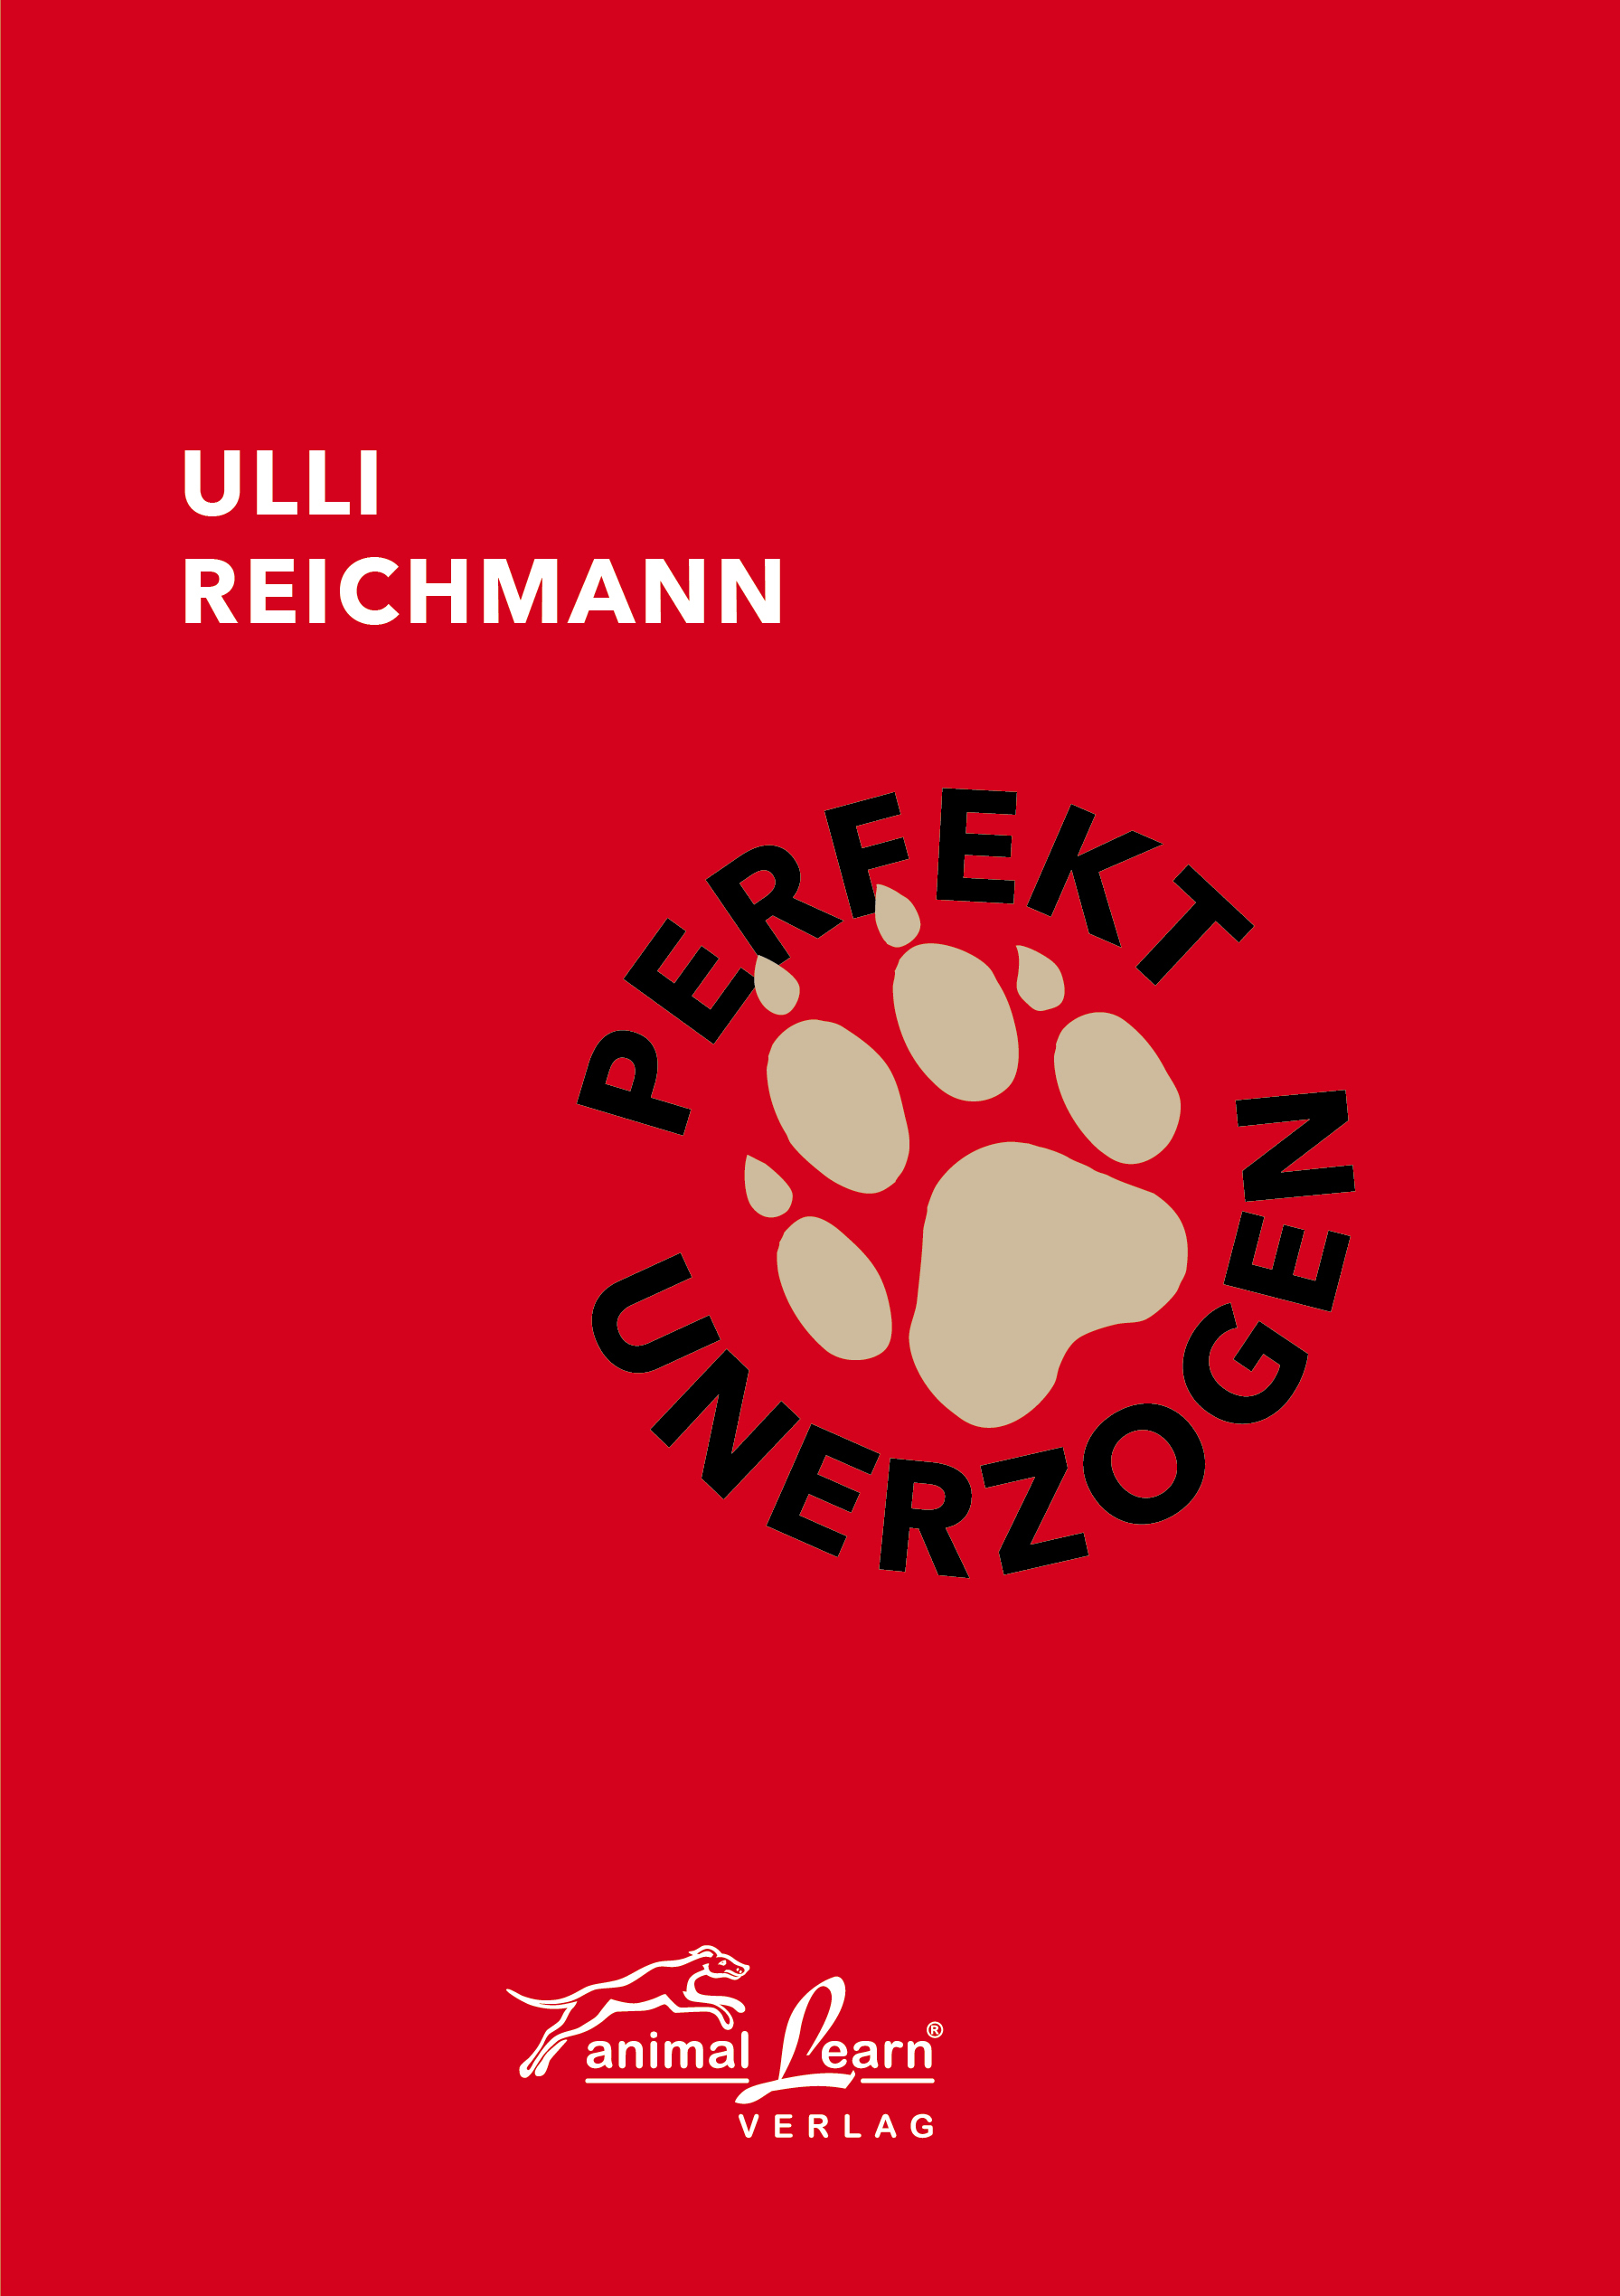 Animal Learn - Perfekt unerzogen [Ulli Reichmann]